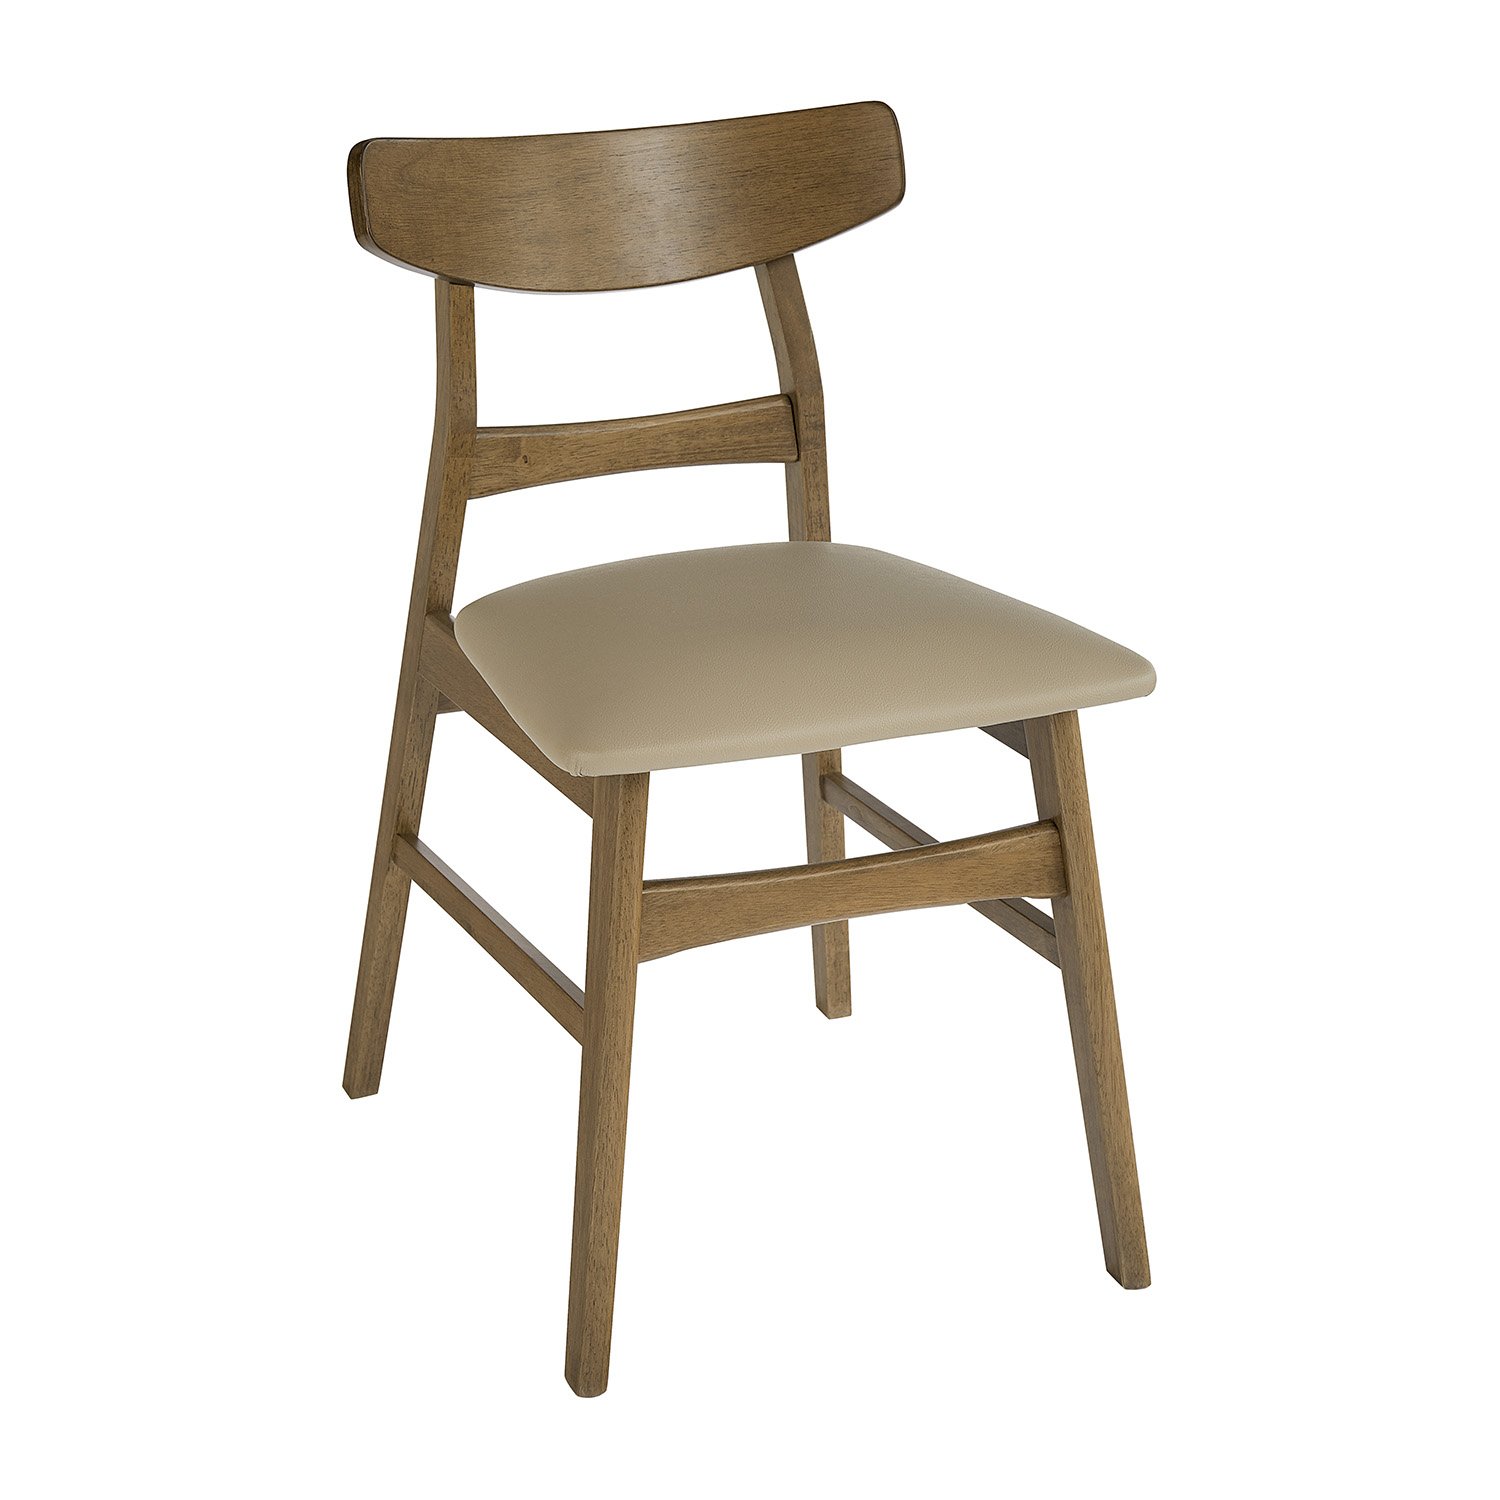 D875-10 chair.jpg